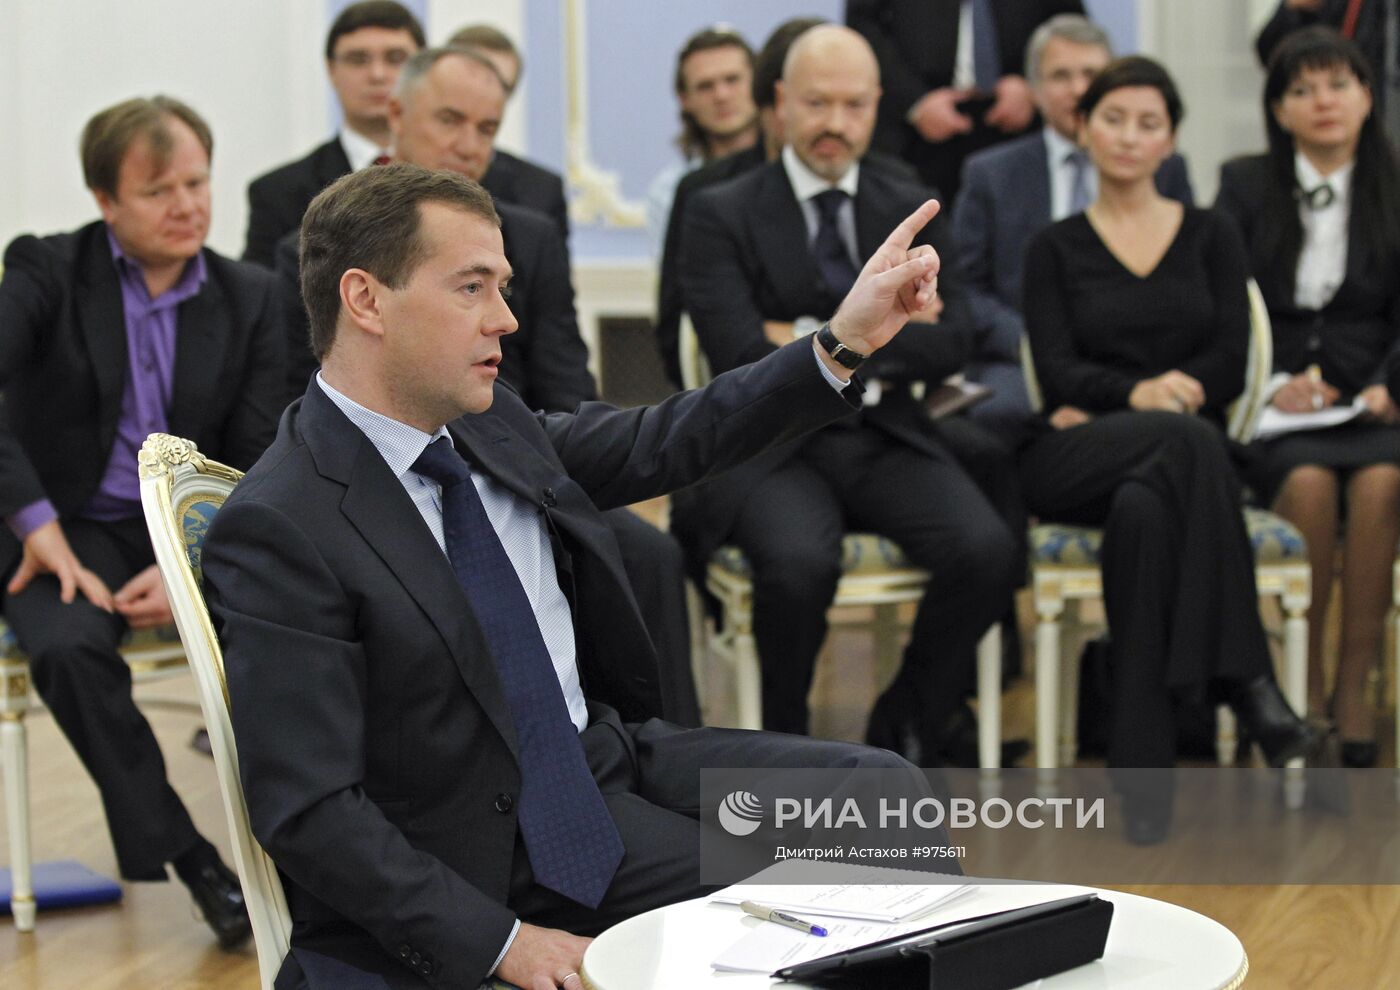 Д.Медведев провел встречу с членами Общественного комитета